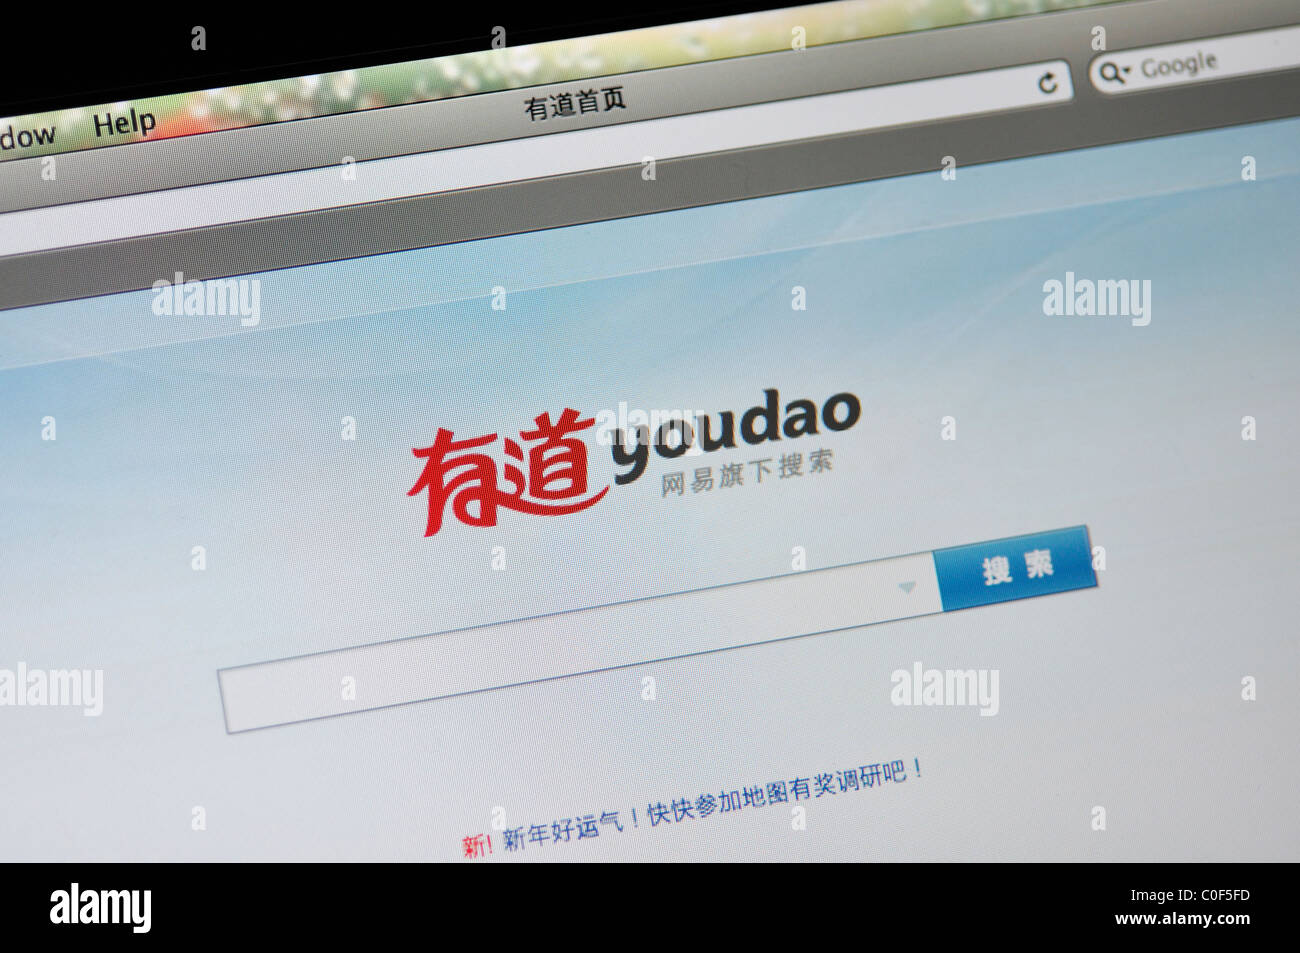 Motore di ricerca cinese immagini e fotografie stock ad alta risoluzione -  Alamy